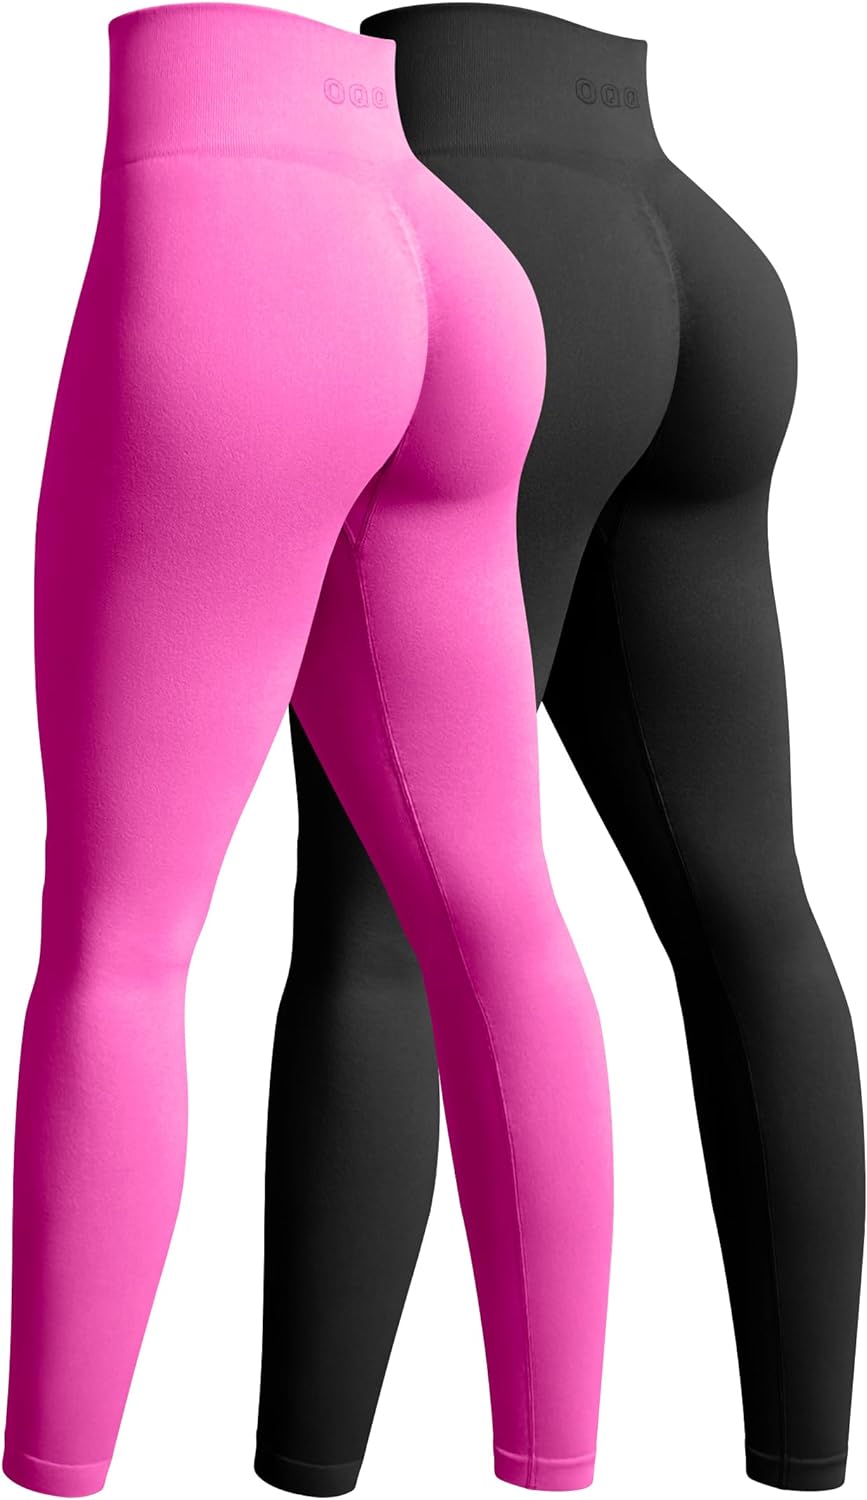 Buy OQQ Women's 2 Piece Yoga Legging Seamless Workout High Waist